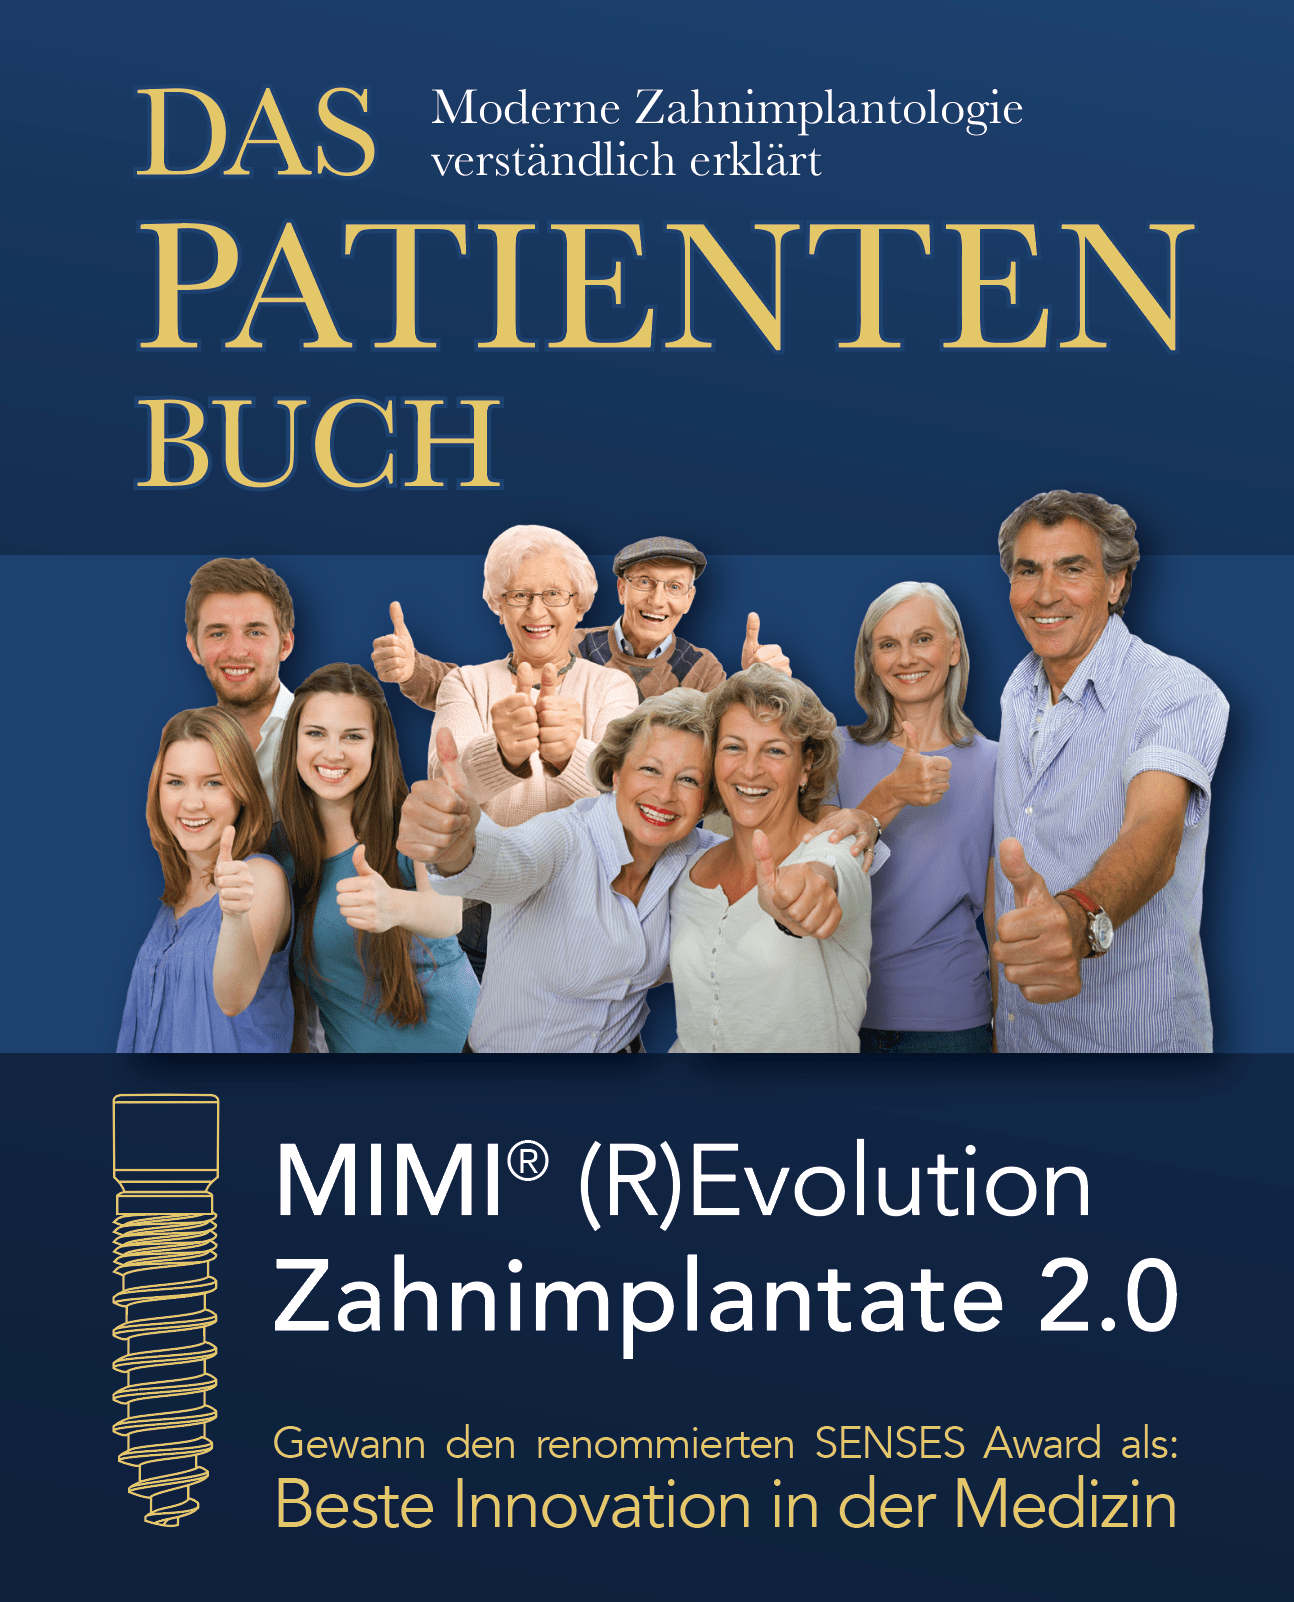 Das Patientenbuch - MIMI®-(R)Evolution Zahnimplantate 2.0 (5 Stk.)